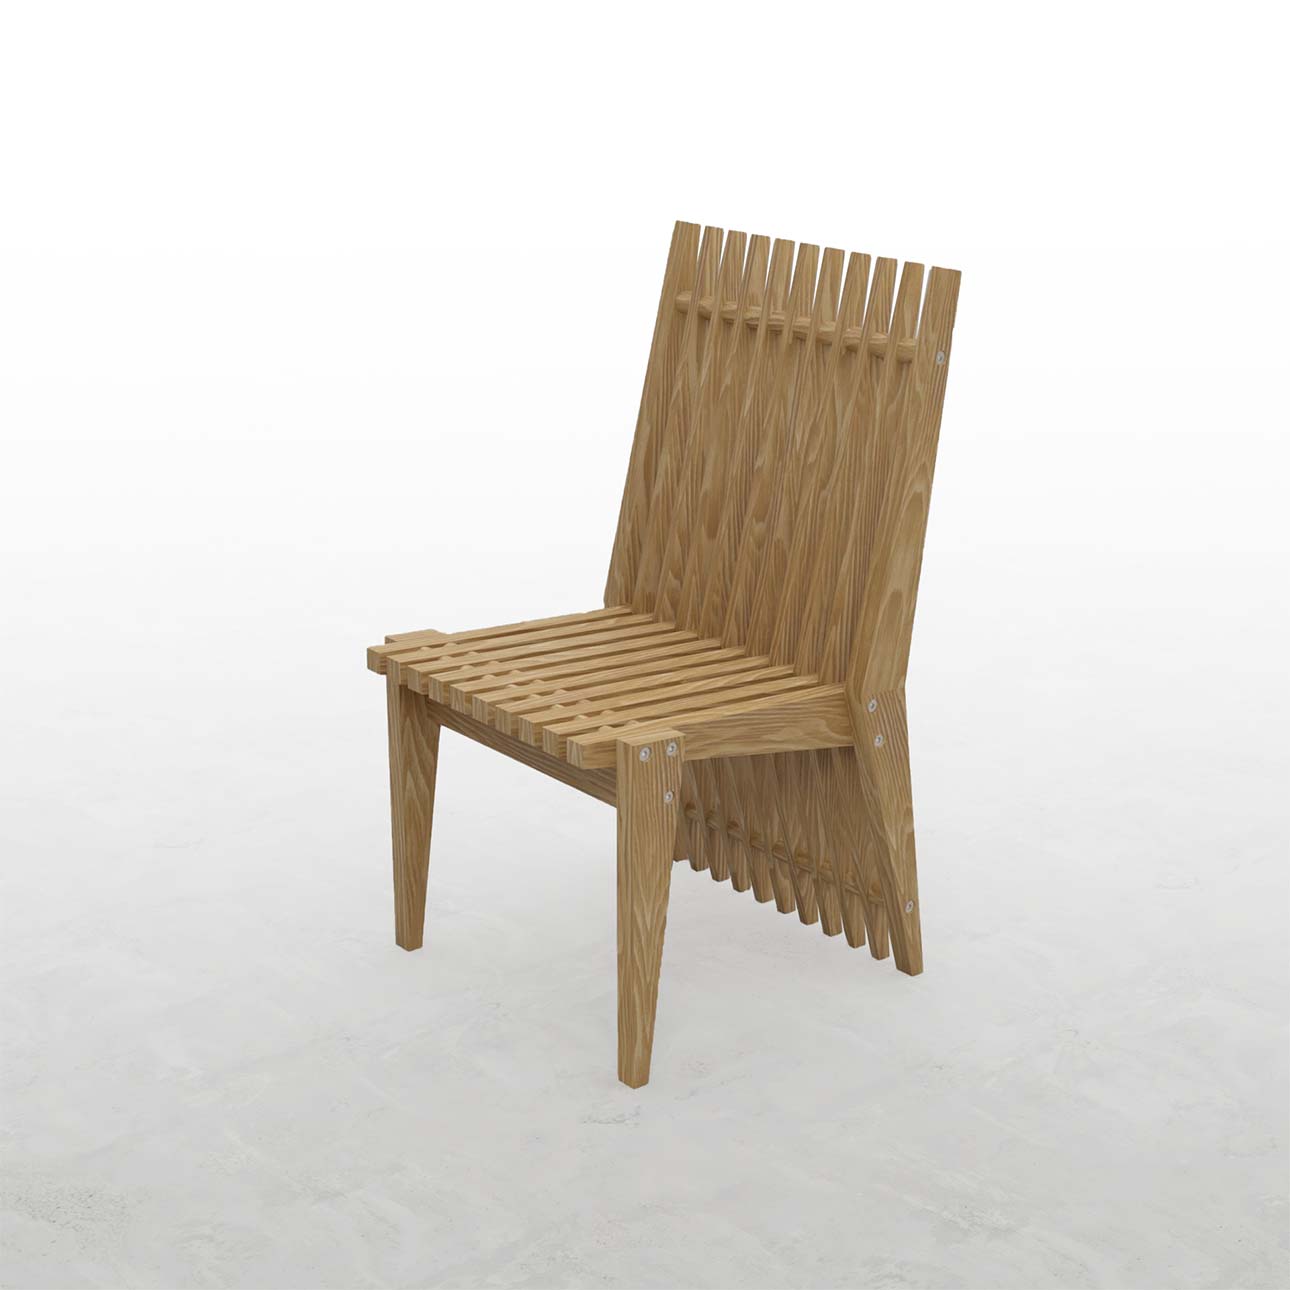 EXA ガーデンチェア-03 木製 椅子 アウトドアチェア 屋外チェア